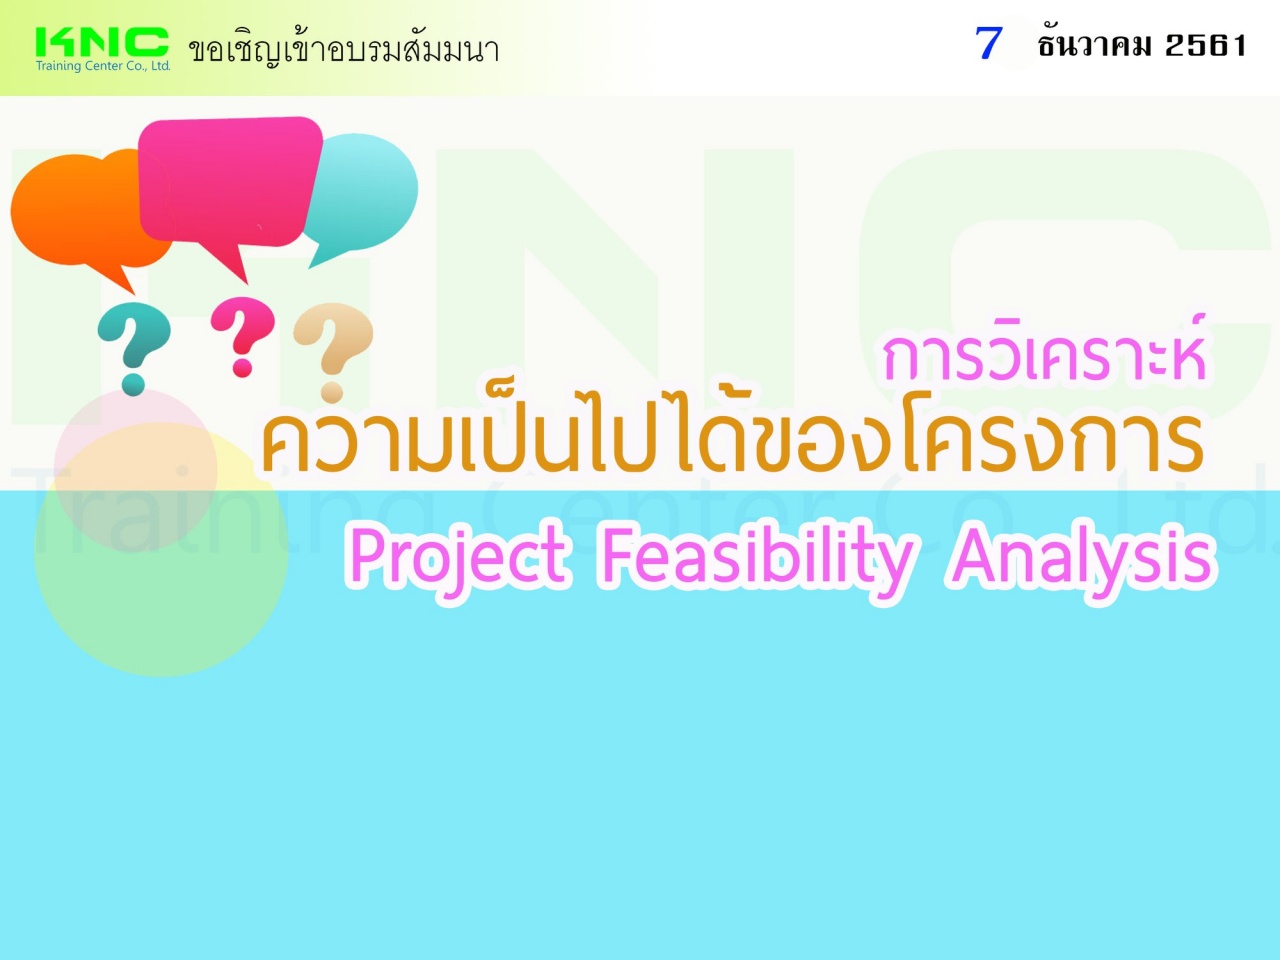 Project Feasibility Analysis : การวิเคราะห์ความเป็นไปได้ของโครงการ